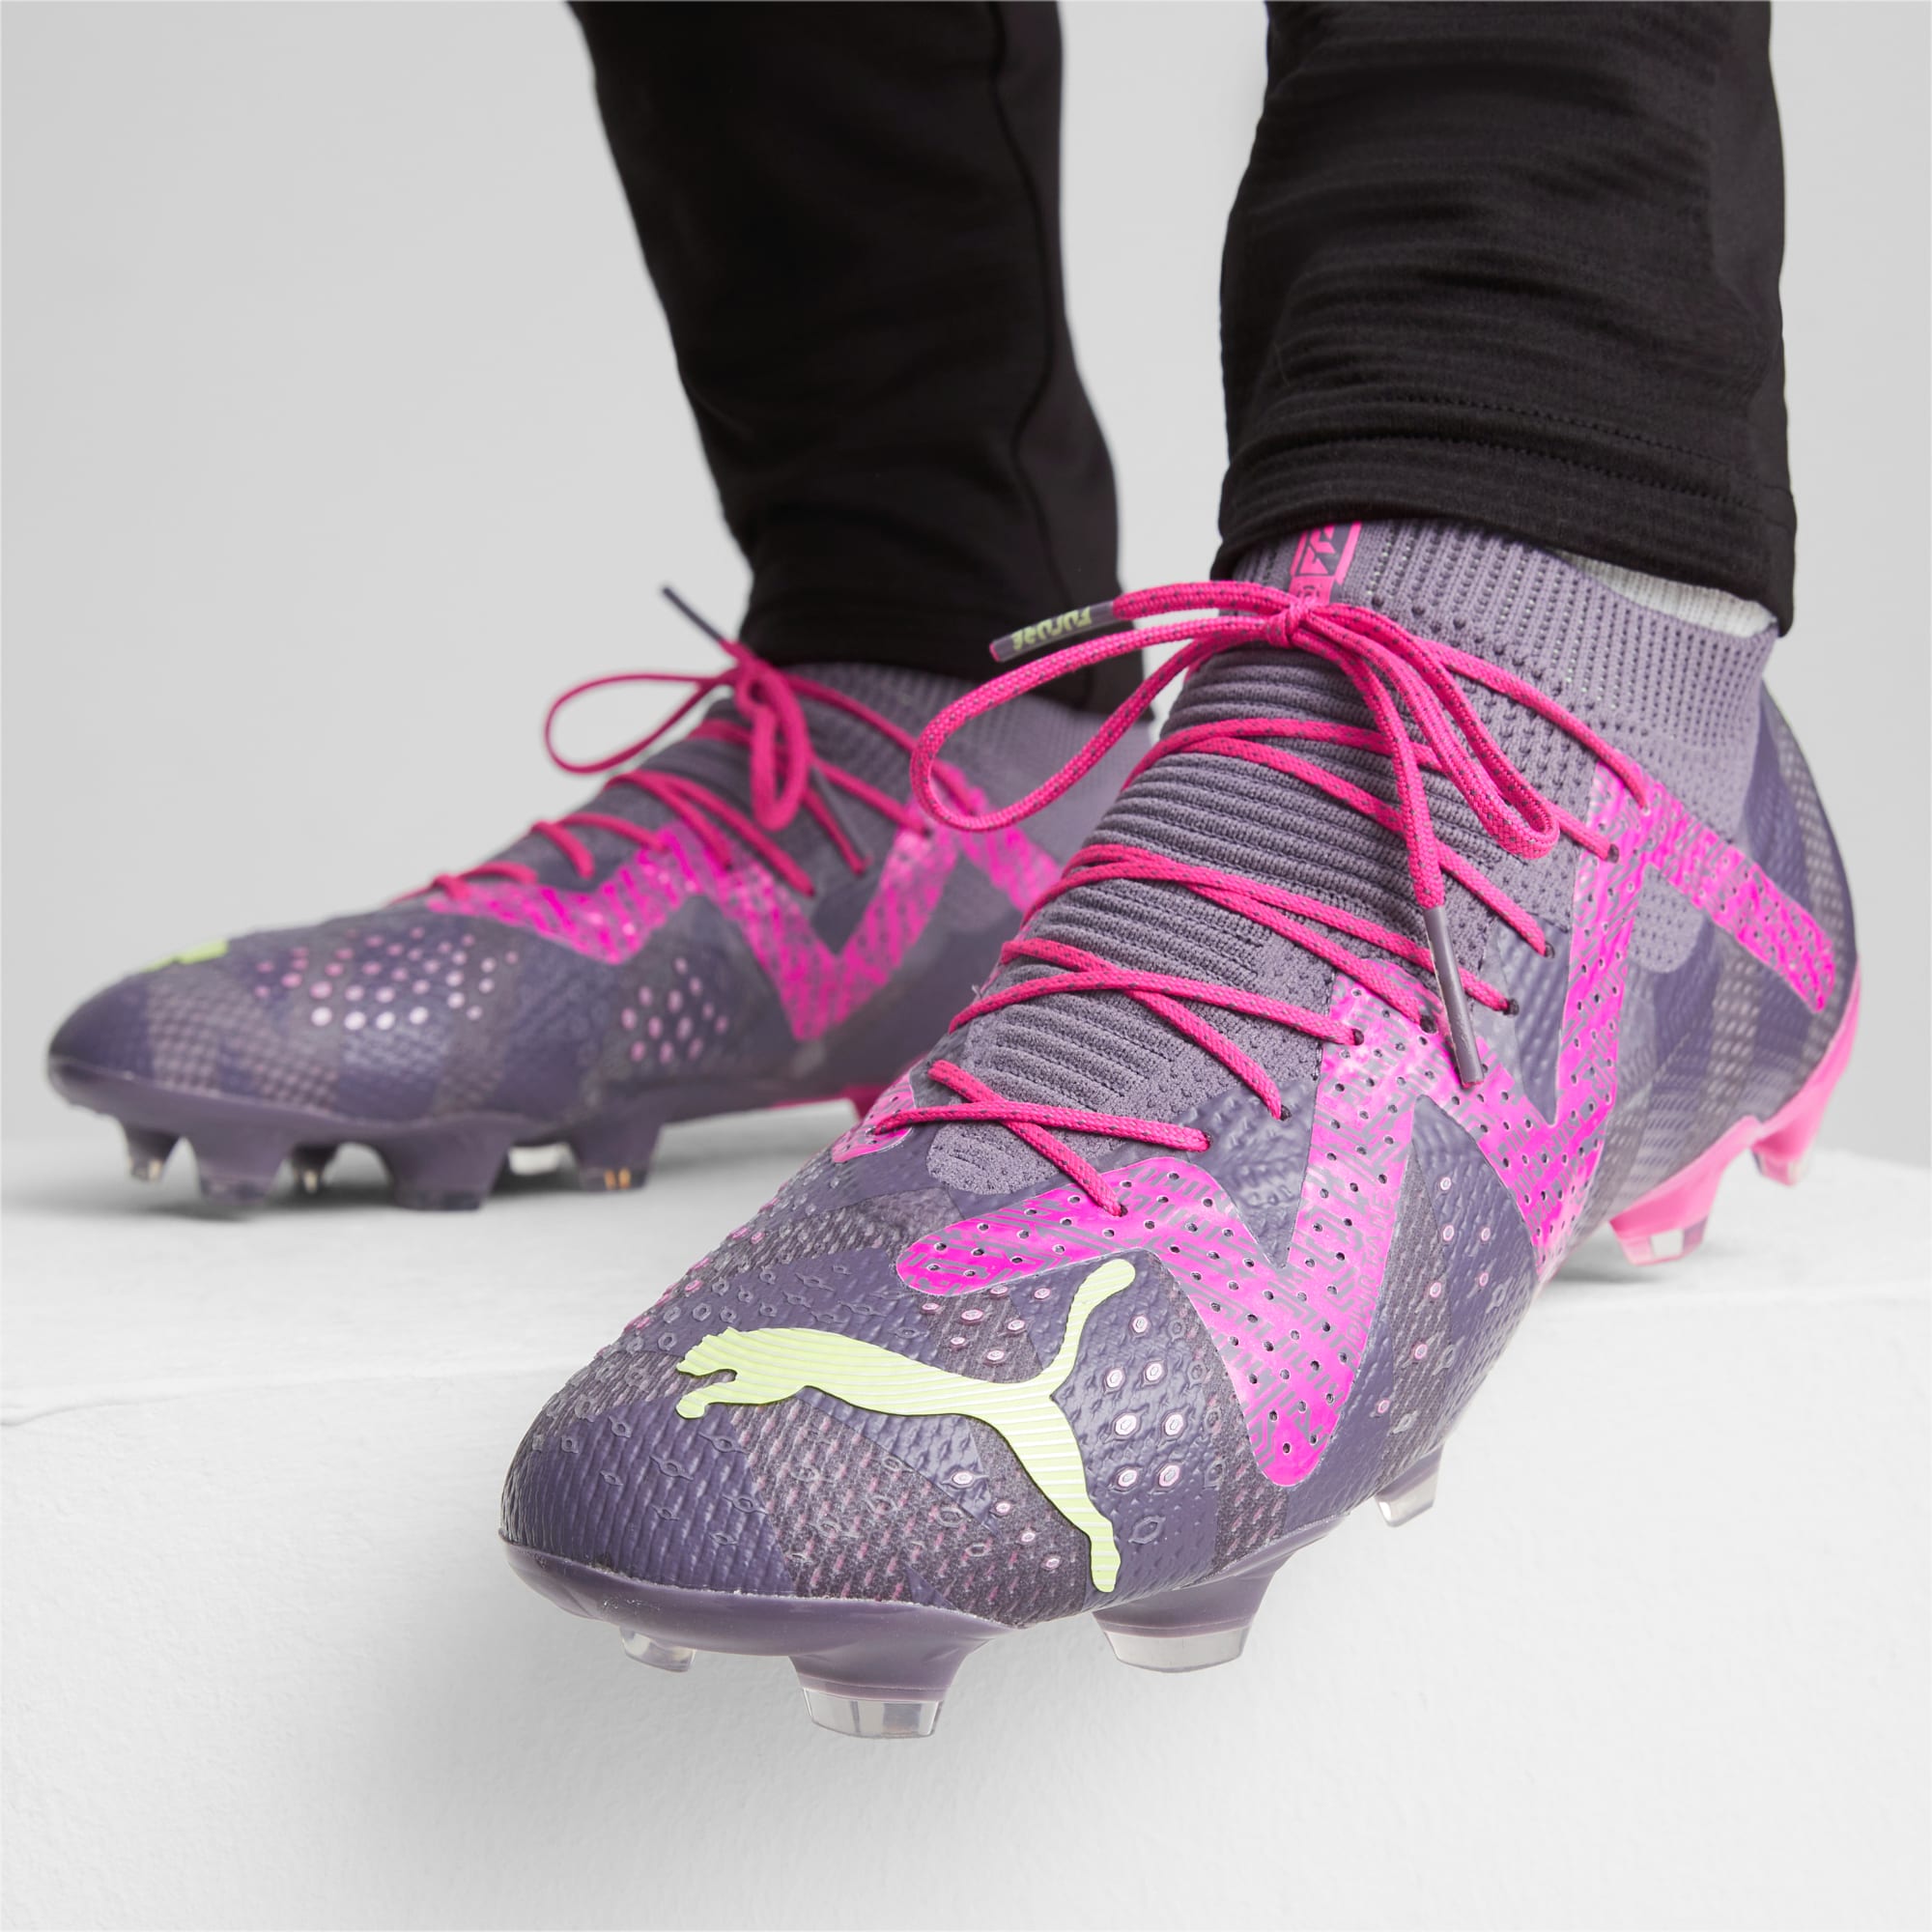 Puma Future Ultimate FG Soccer Shoes